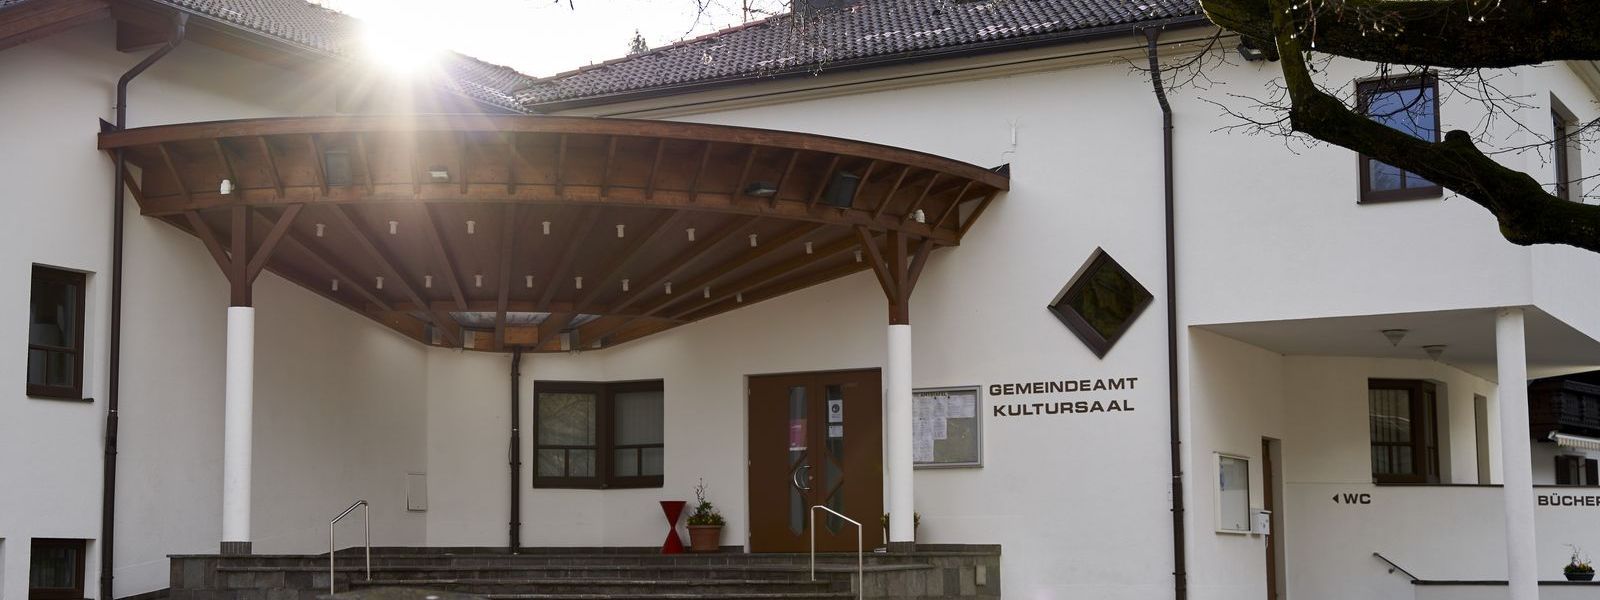 Eingang des Gemeindeamtes von Oberlienz. Weißes Gebäude